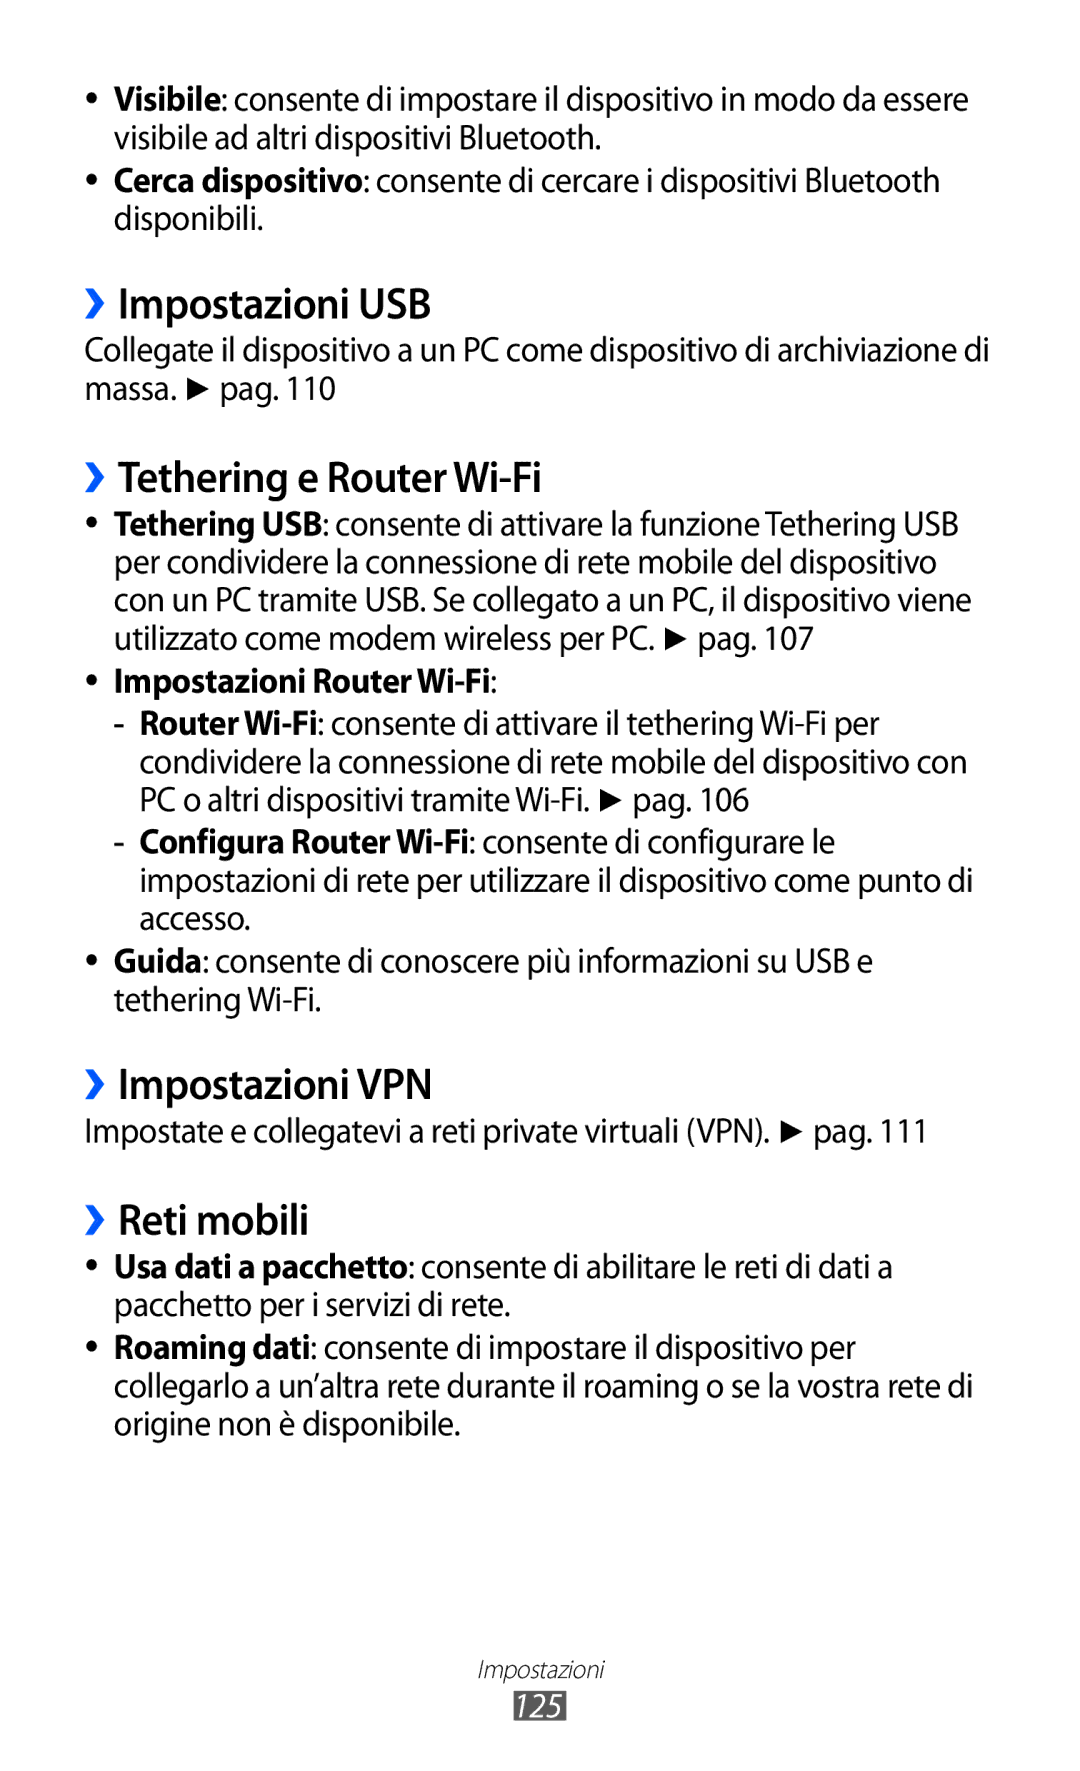 Samsung GT-I8150FKAITV, GT-I8150EWAITV ››Impostazioni USB, ››Tethering e Router Wi-Fi, ››Impostazioni VPN, ››Reti mobili 